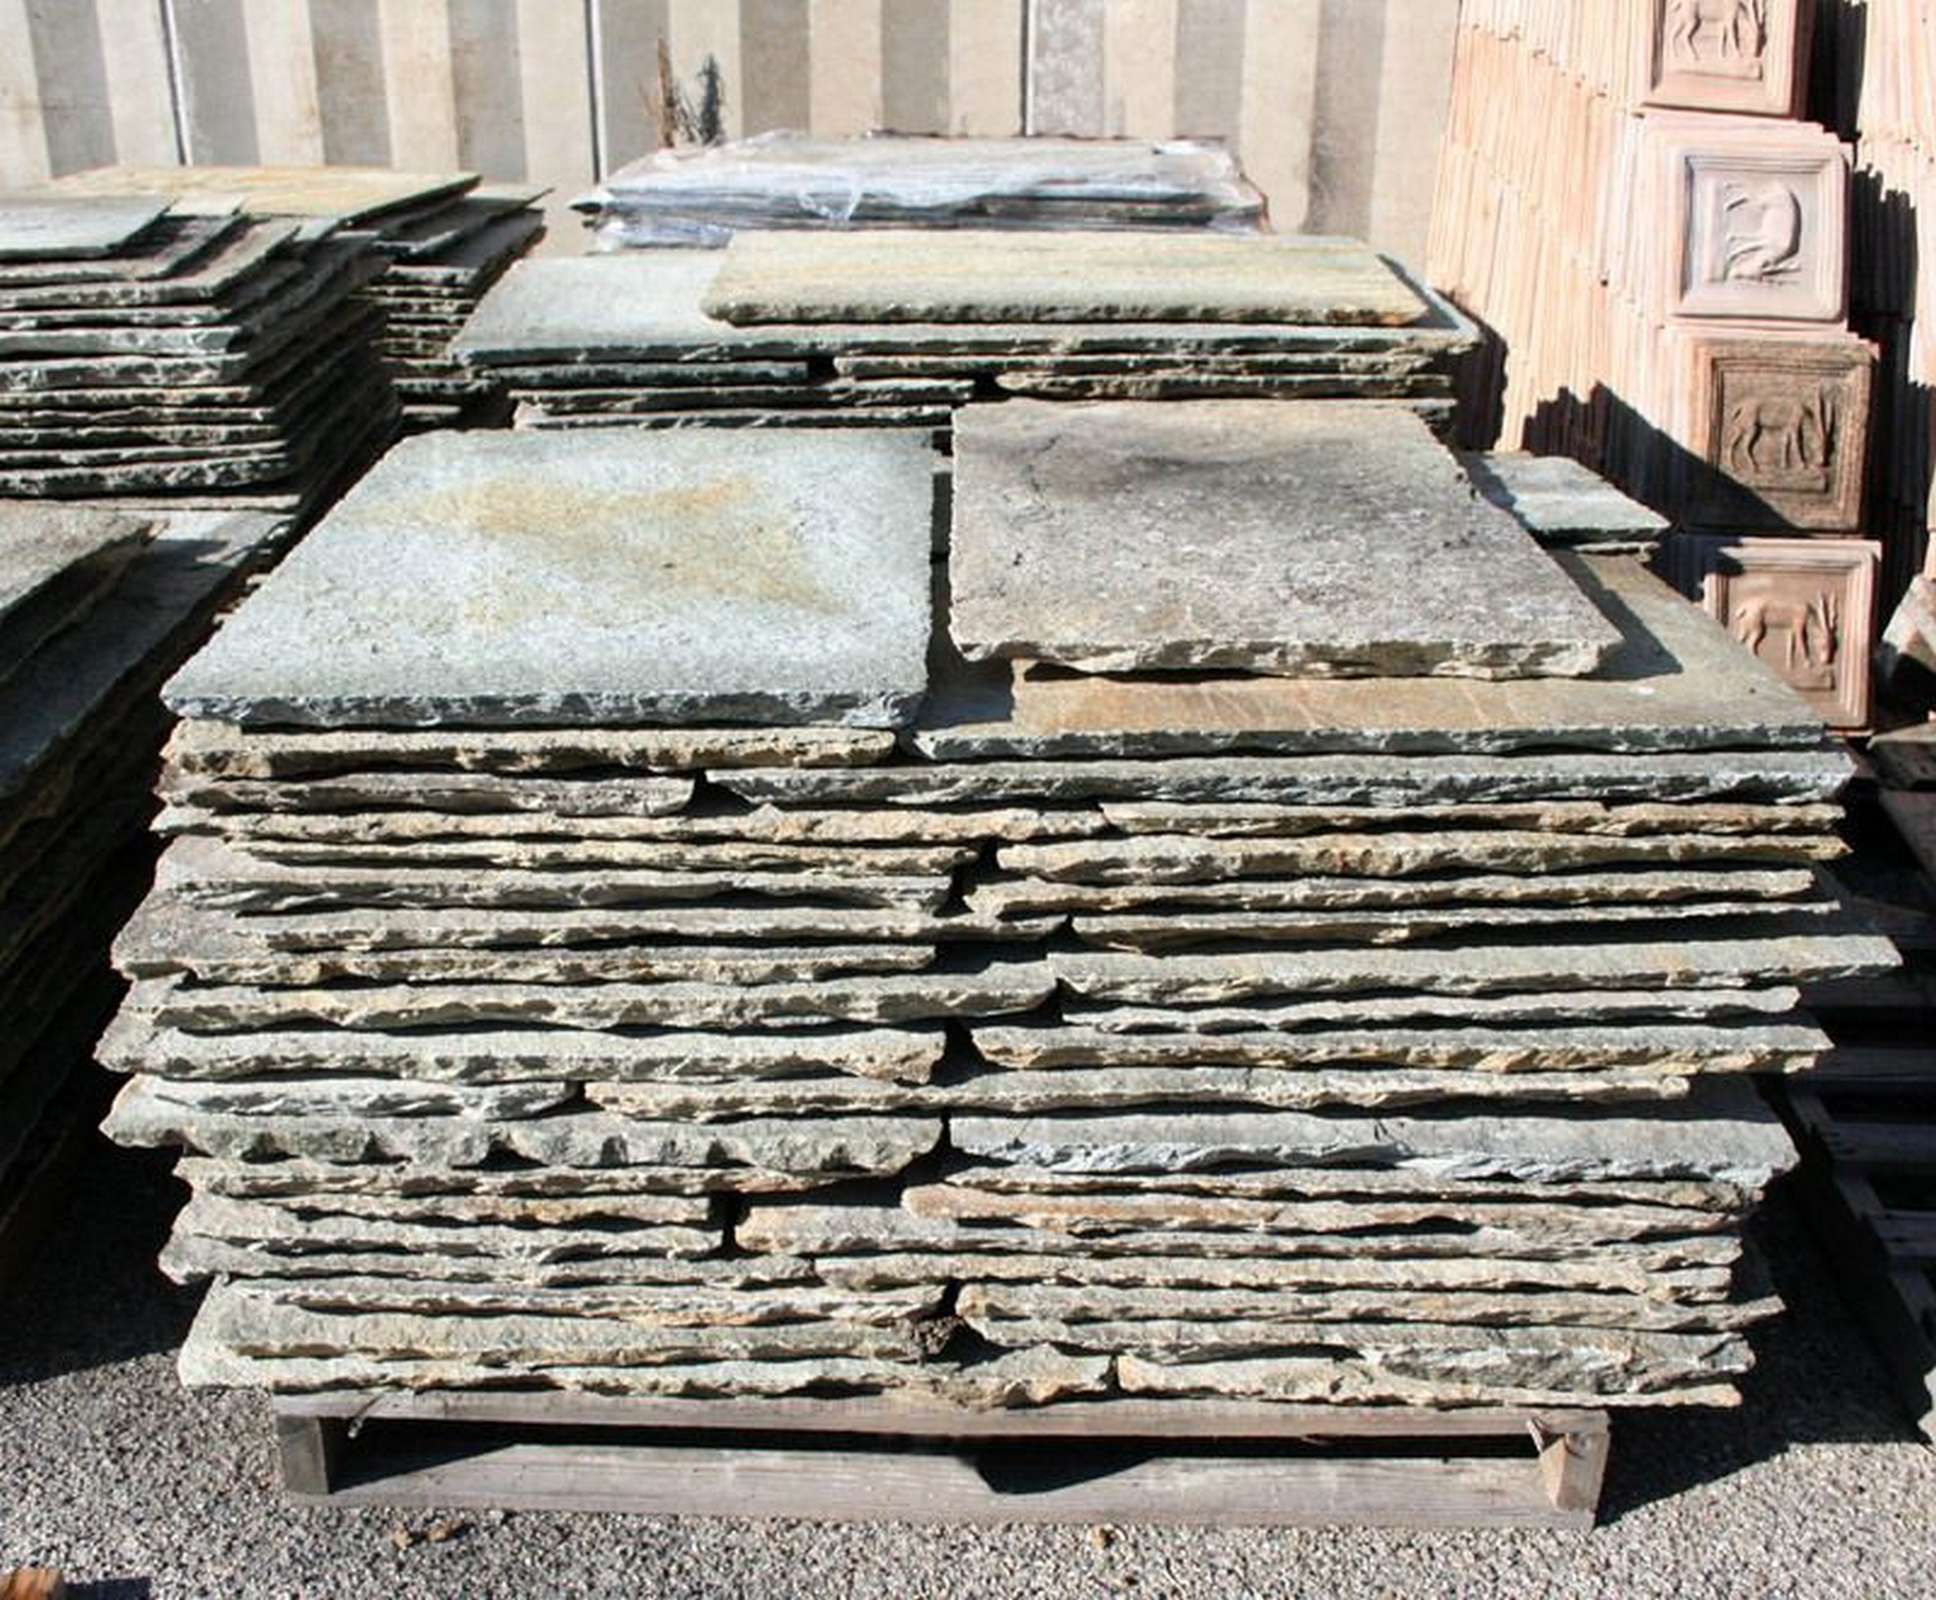 Antico pavimento in pietra - Pavimenti in Pietra - Pavimentazioni Antiche - Prodotti - Antichità Fiorillo